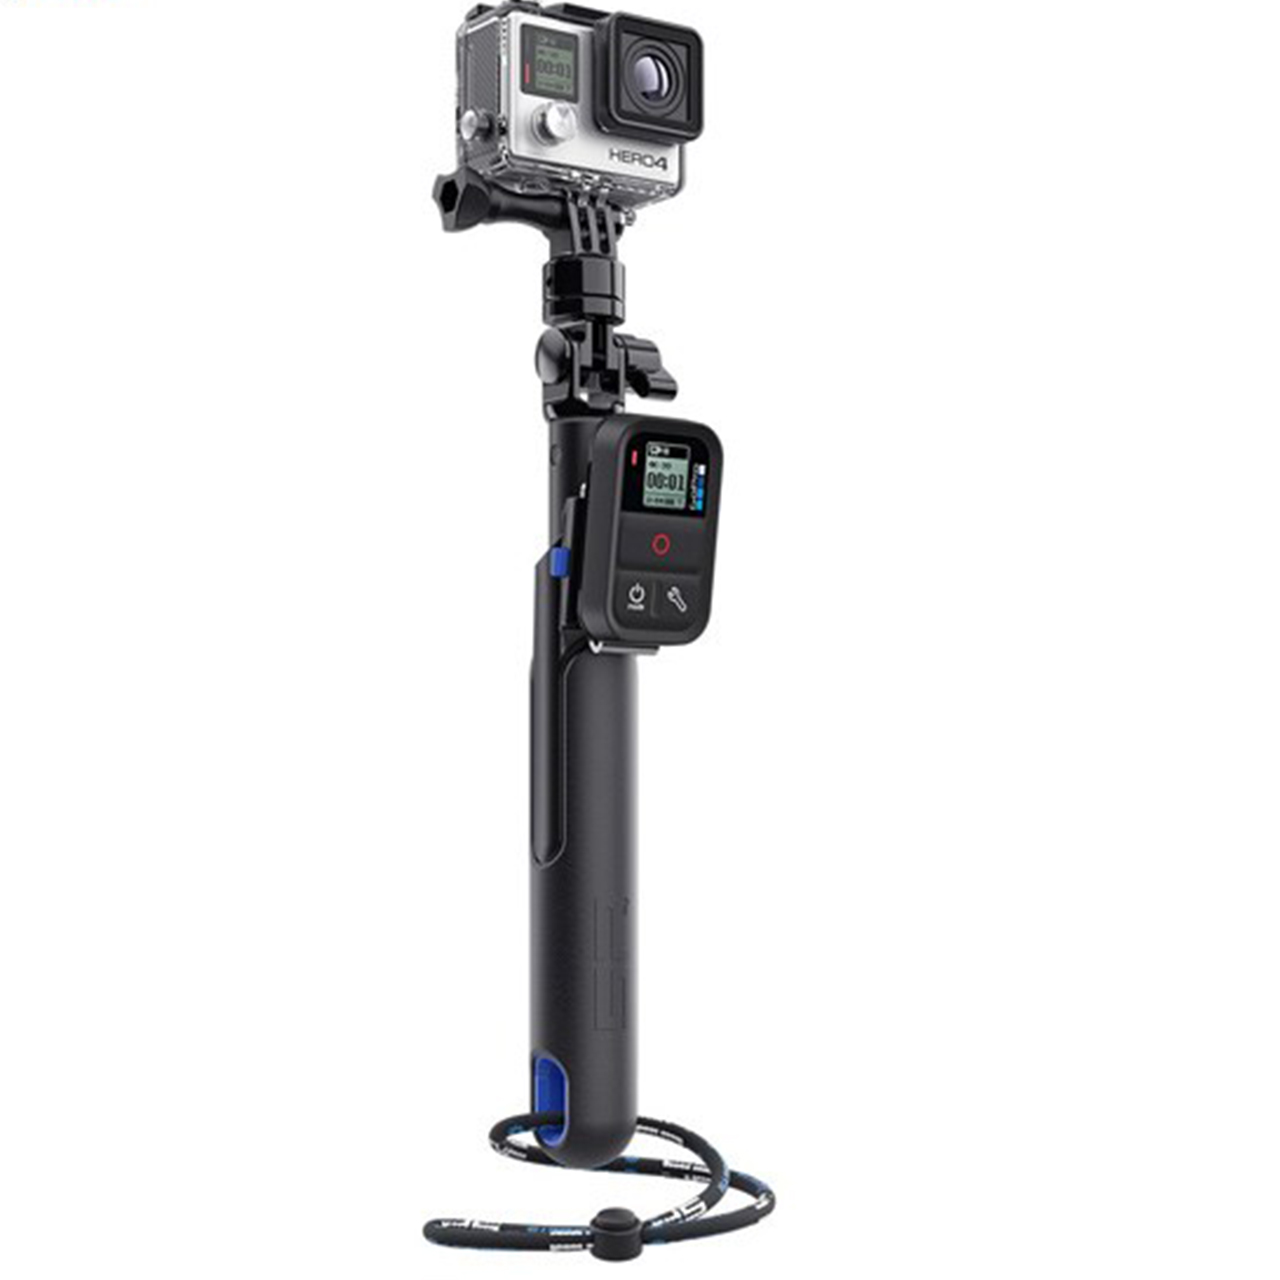 مونوپاد اس پی گجت مدل Smart Pole 28 مخصوص دوربین های گوپرو